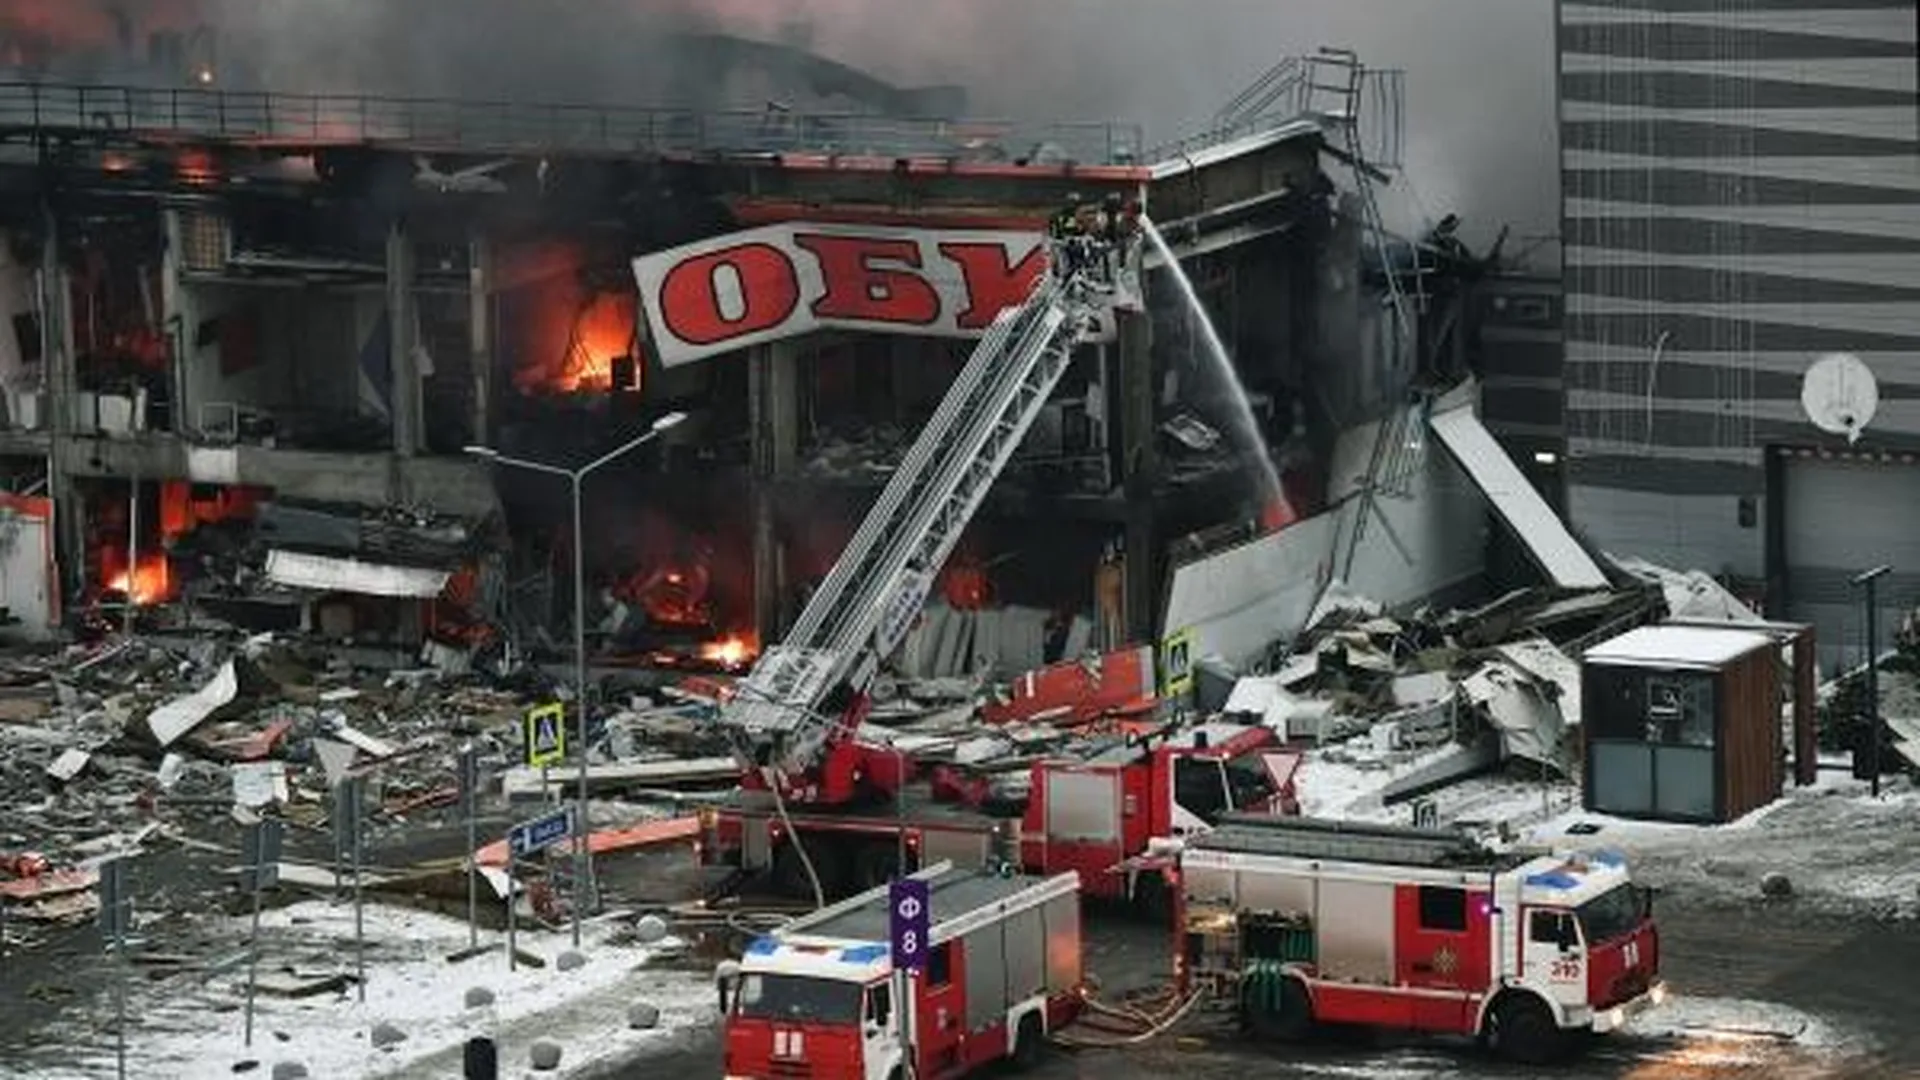 Страховщики определят ущерб от пожара в гипермаркете OBI после завершения расследования